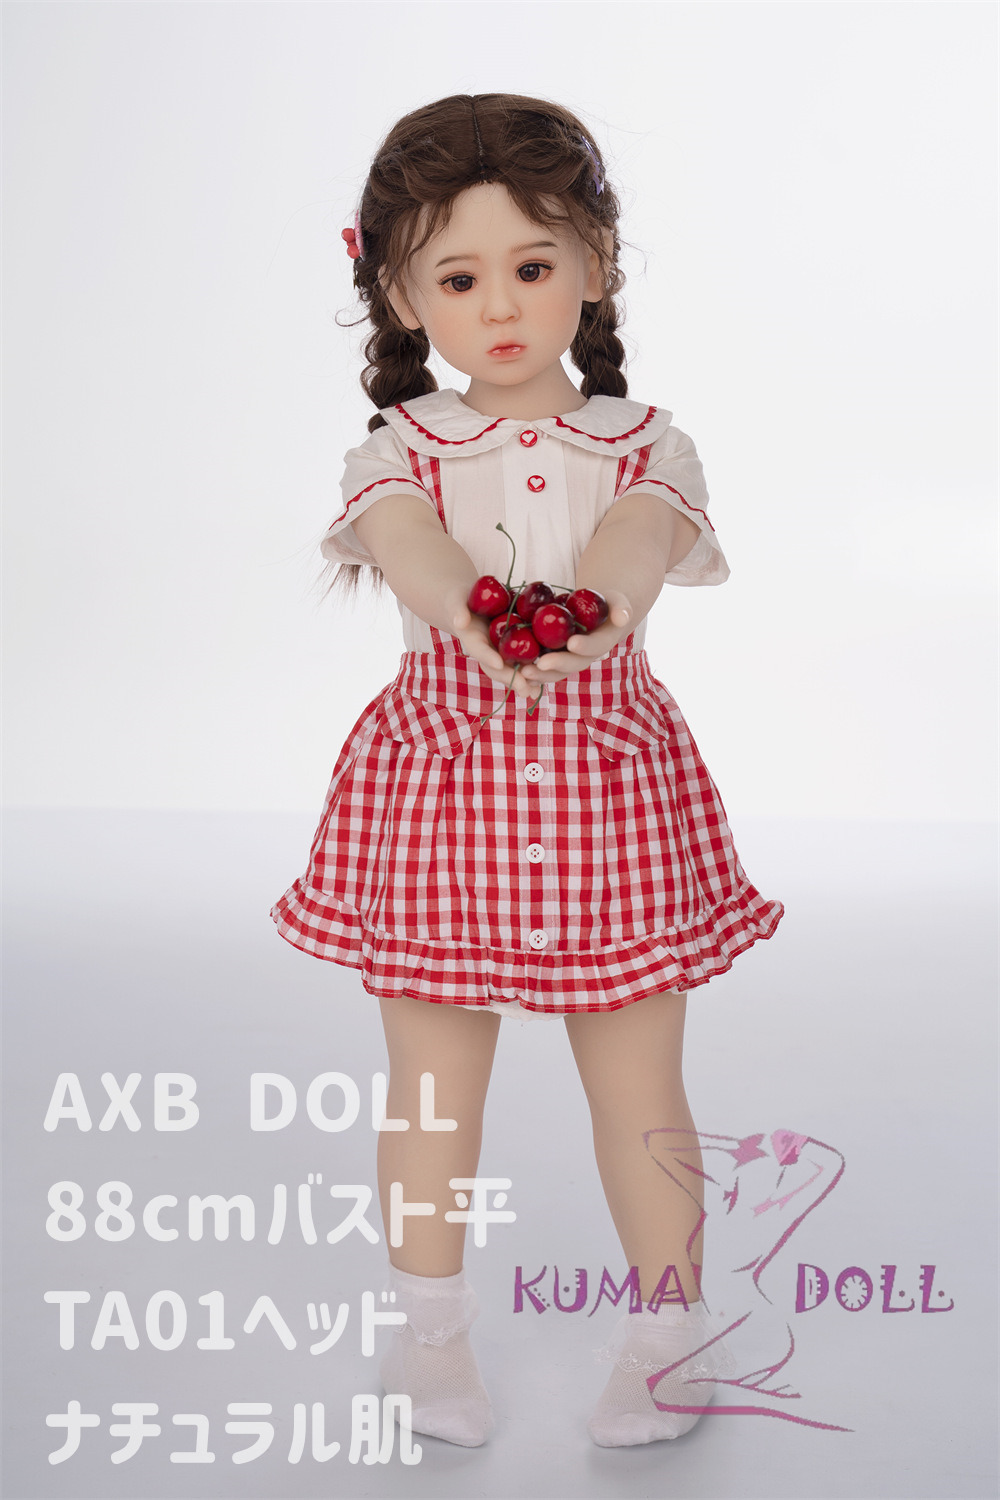 TPE Love Doll AXB Doll 88cm Bust Flat #TA01ヘッド